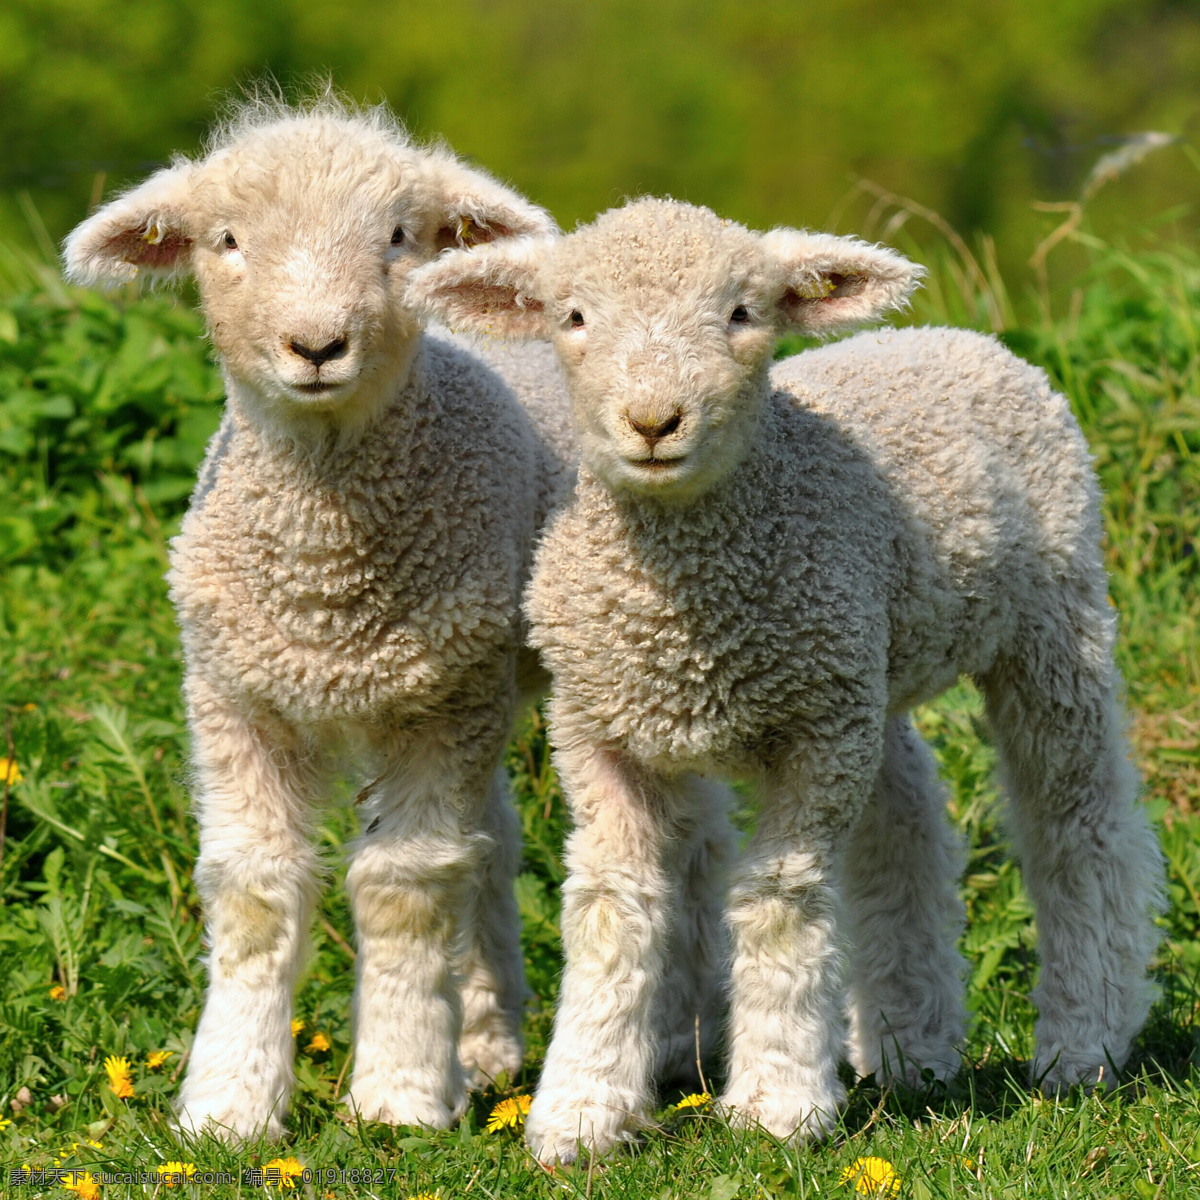 可爱 小 羊羔 可爱小羊羔 羊 小羊羔 动物世界 动物摄影 陆地动物 生物世界